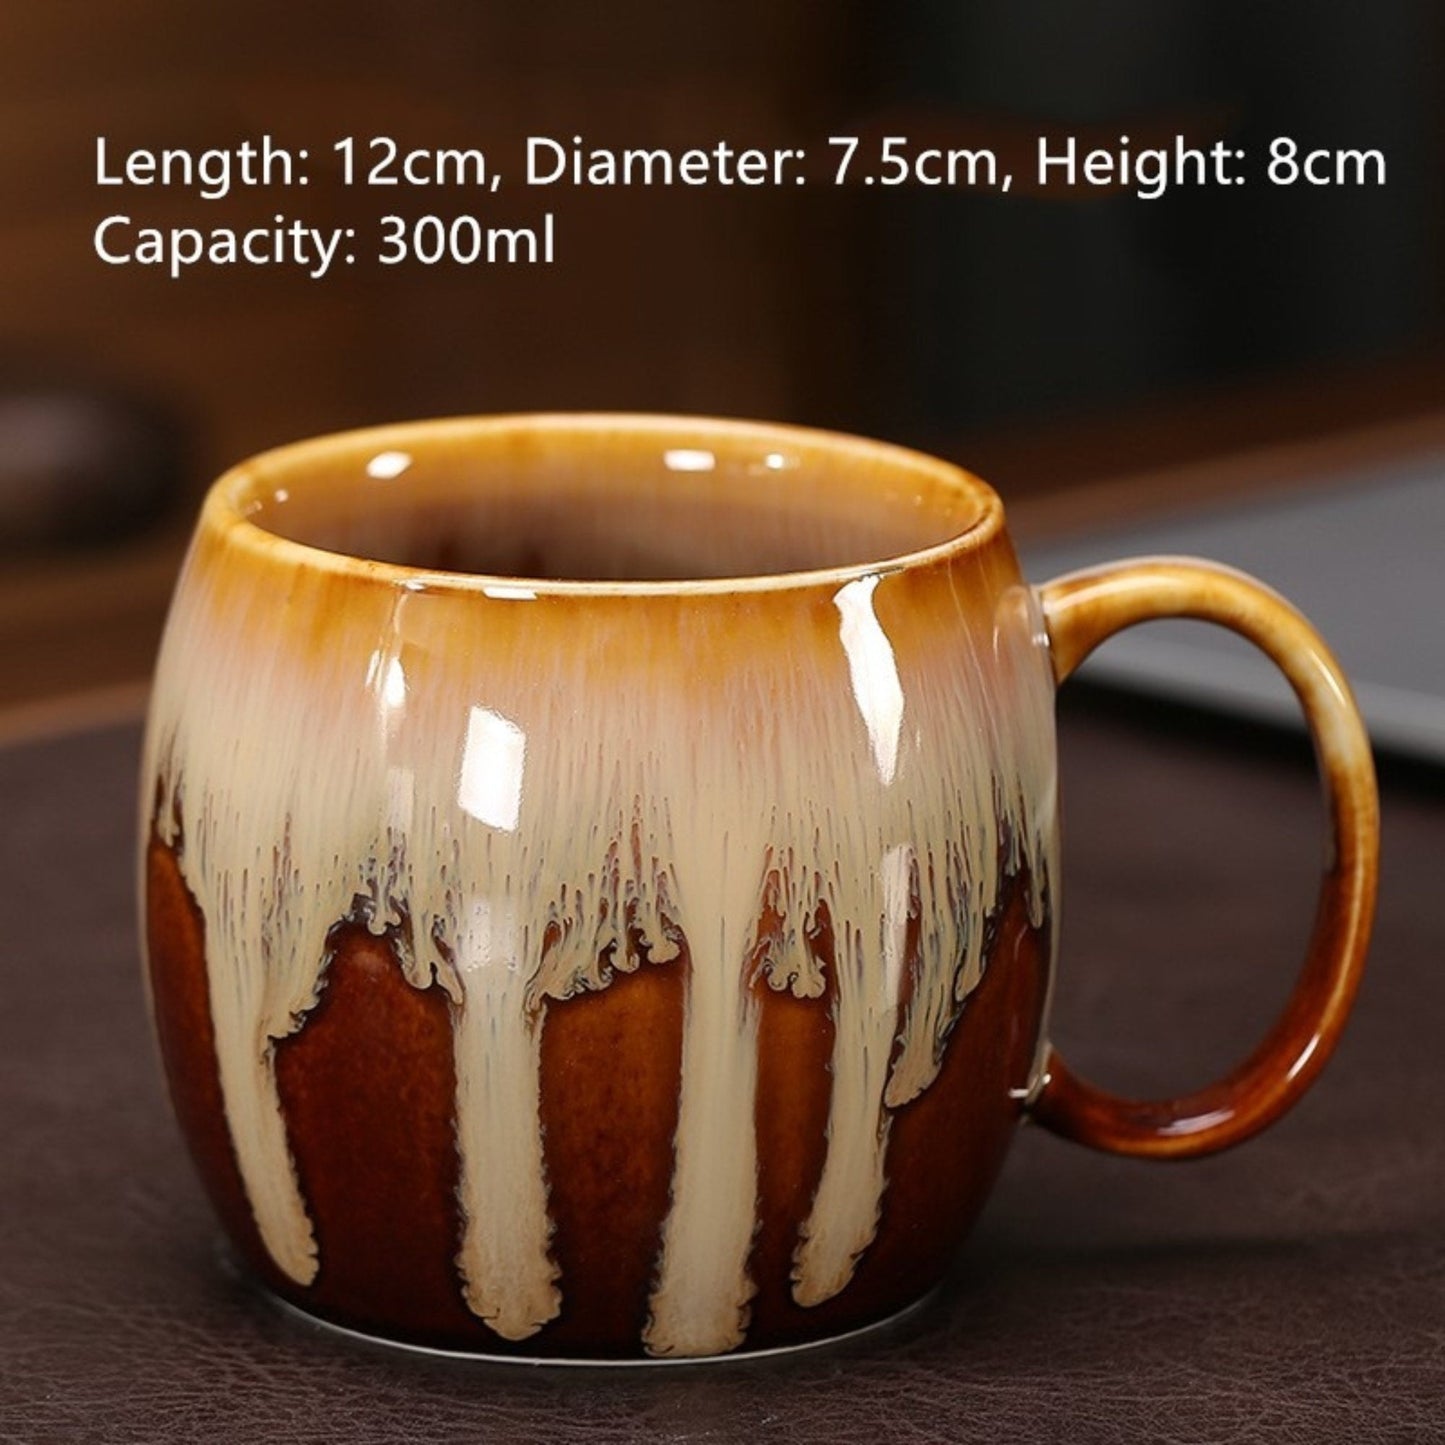 Japanese style mug 10.14oz | unique mug, Colorful Mug Set, Reactive Glazed Mug, Japanese Pottery Mug